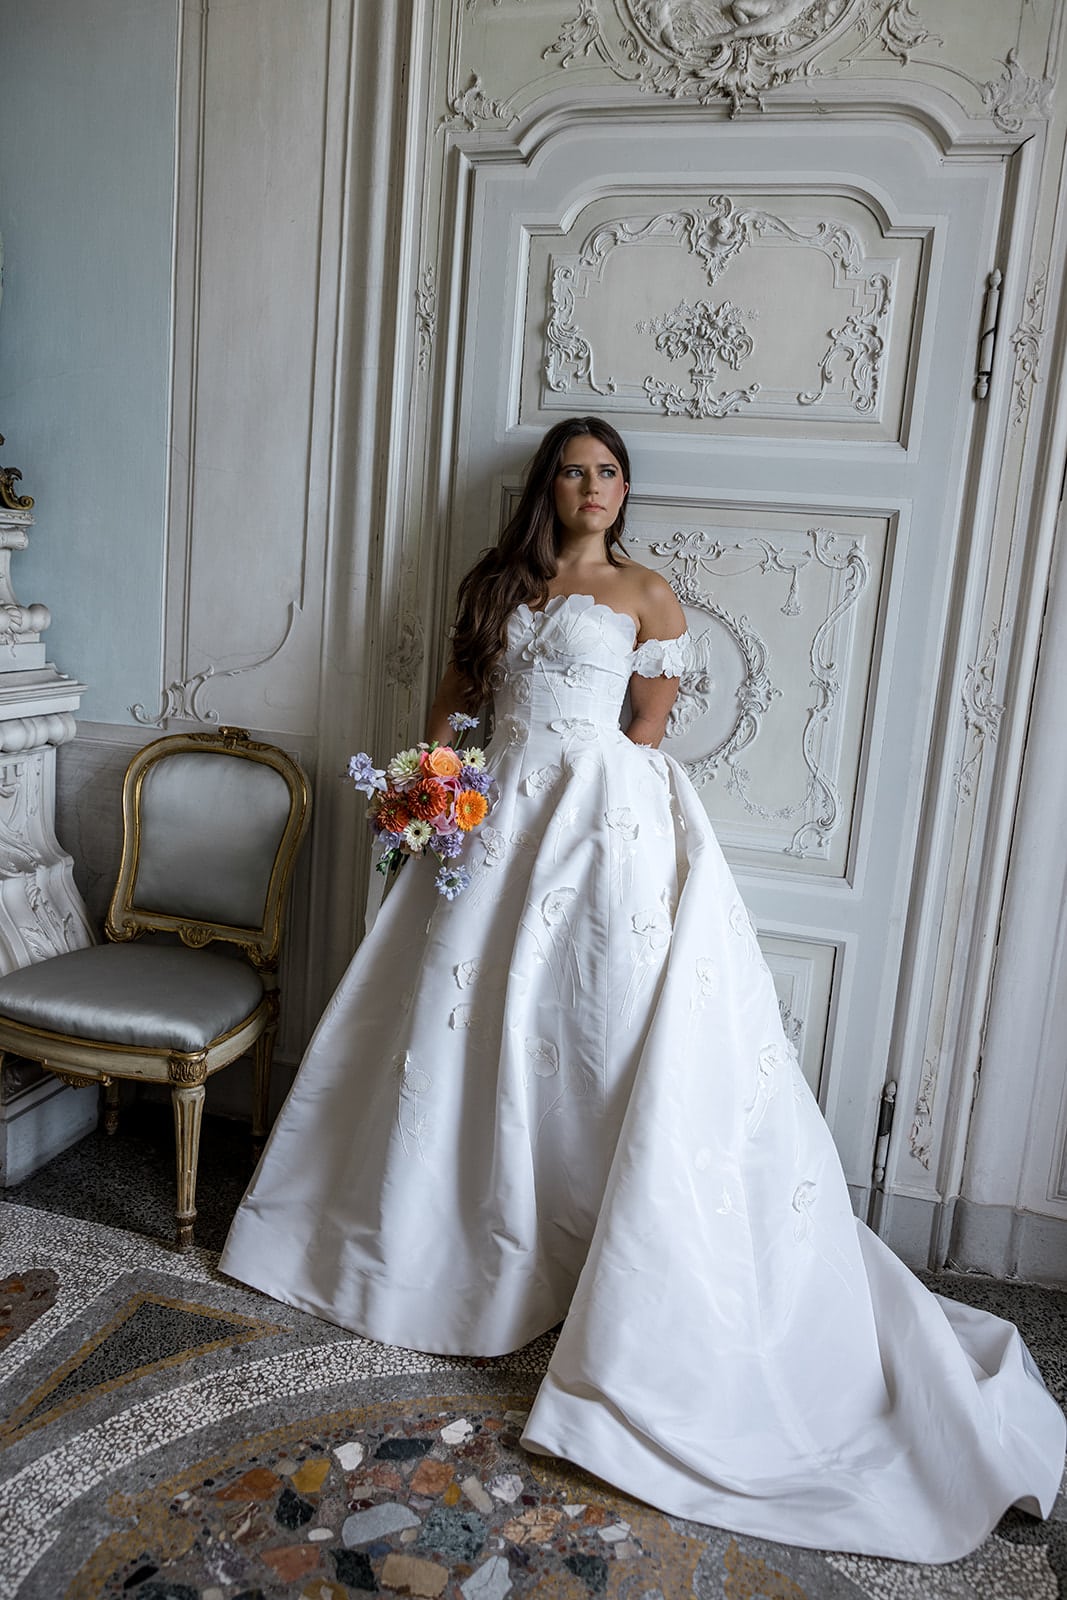 Bride wears Oscar de la Renta gown for bridal portraits in Villa Sola Cabiati